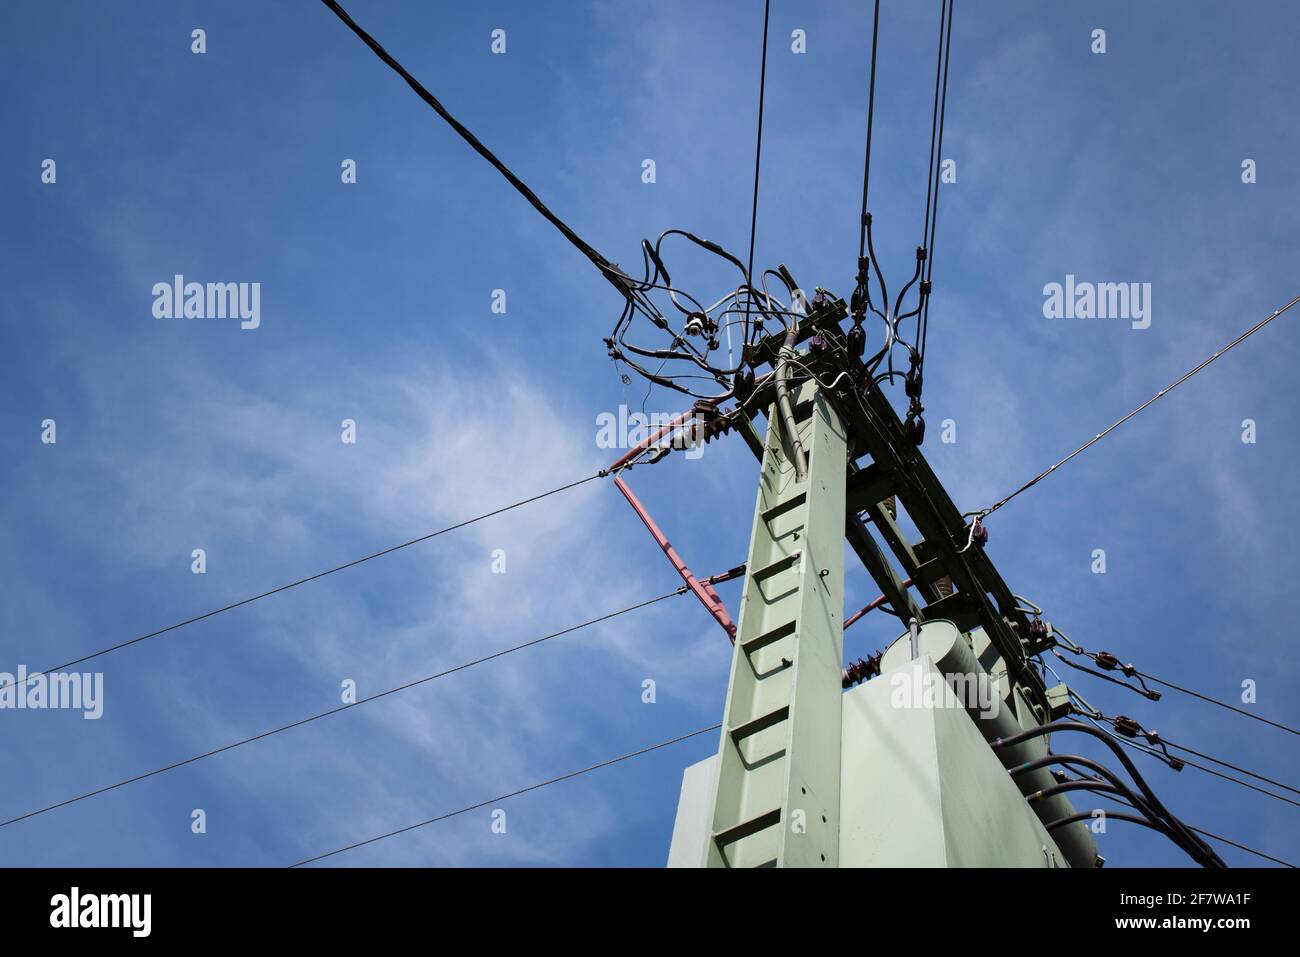 Ein Mast mit einem Netzwerk aus vielen verschiedenen Stromkabeln Wird von unten gegen den blauen Himmel mit Wolken fotografiert Stockfoto